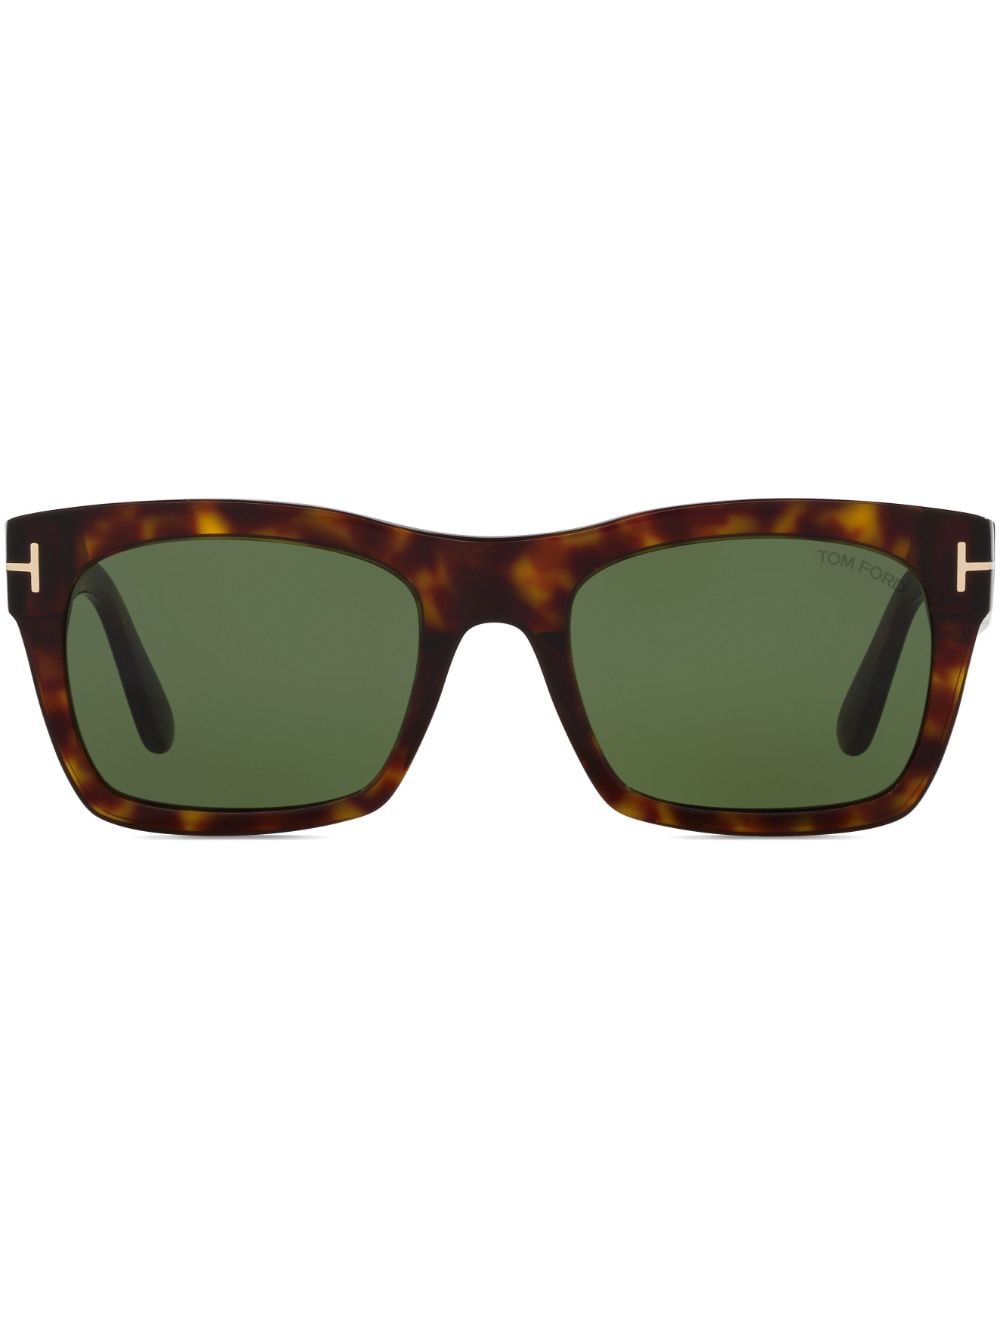 TOM FORD Eyewear Nico sunglasses - Green von TOM FORD Eyewear